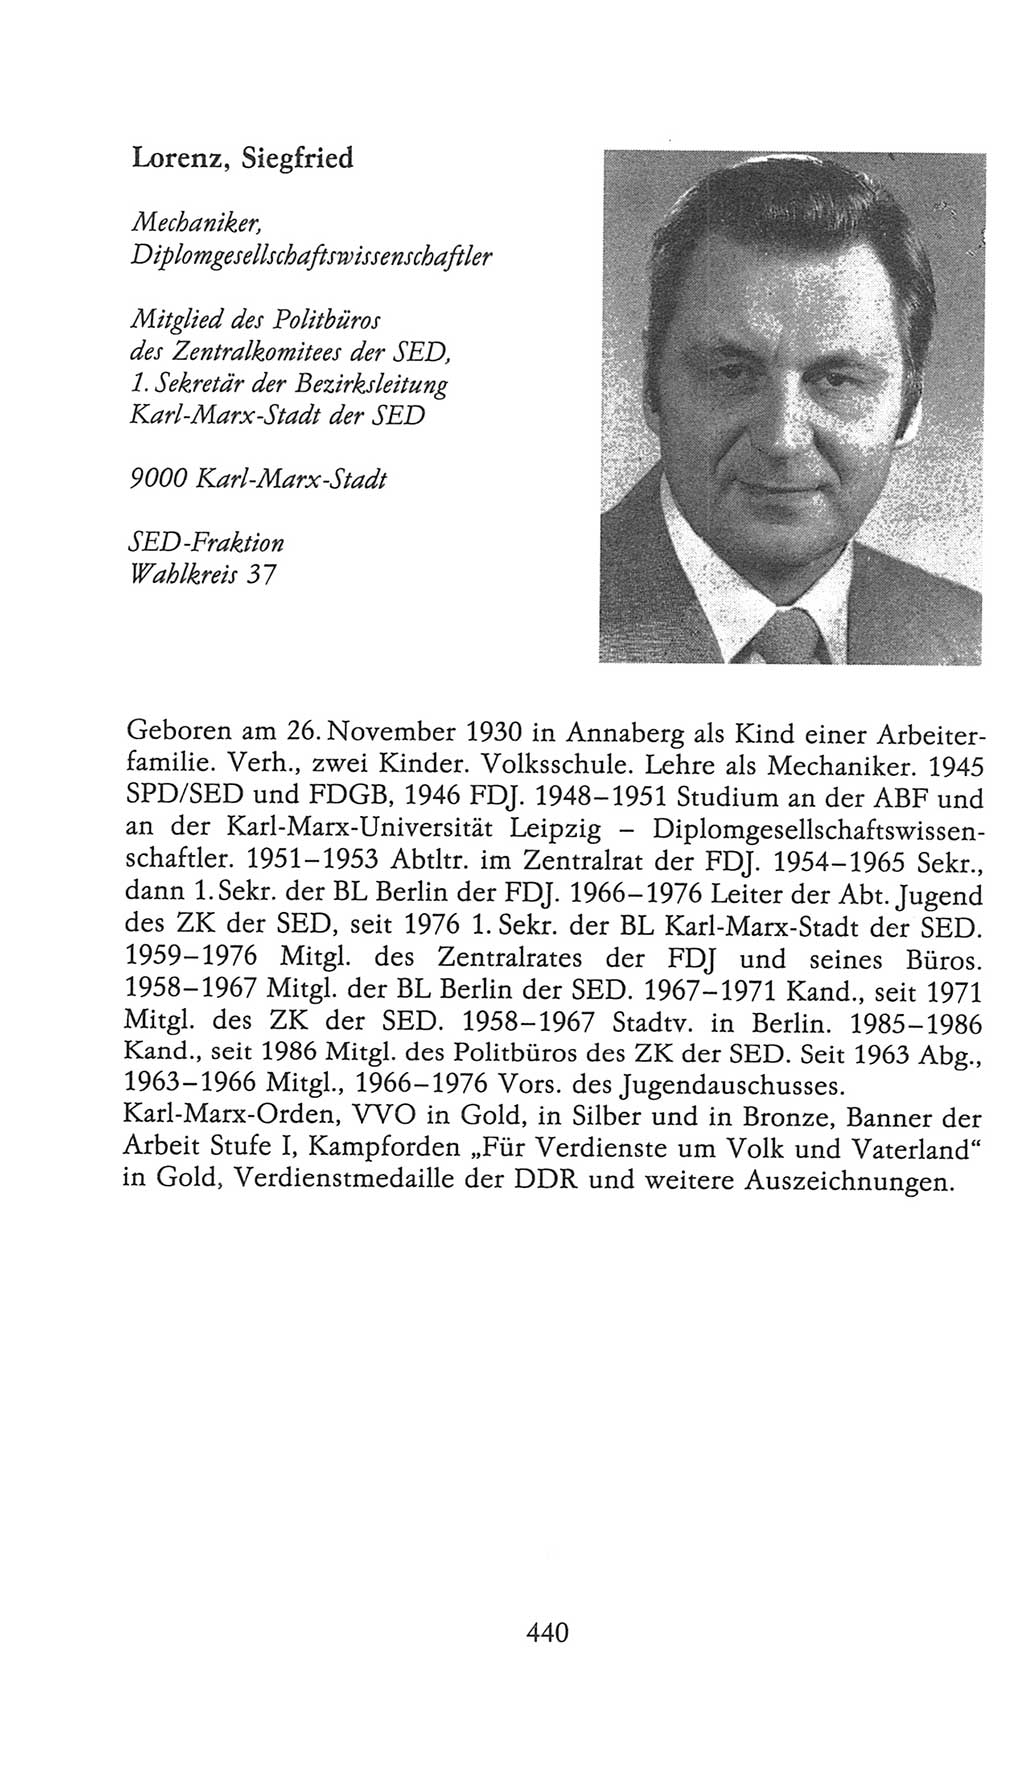 Volkskammer (VK) der Deutschen Demokratischen Republik (DDR), 9. Wahlperiode 1986-1990, Seite 440 (VK. DDR 9. WP. 1986-1990, S. 440)